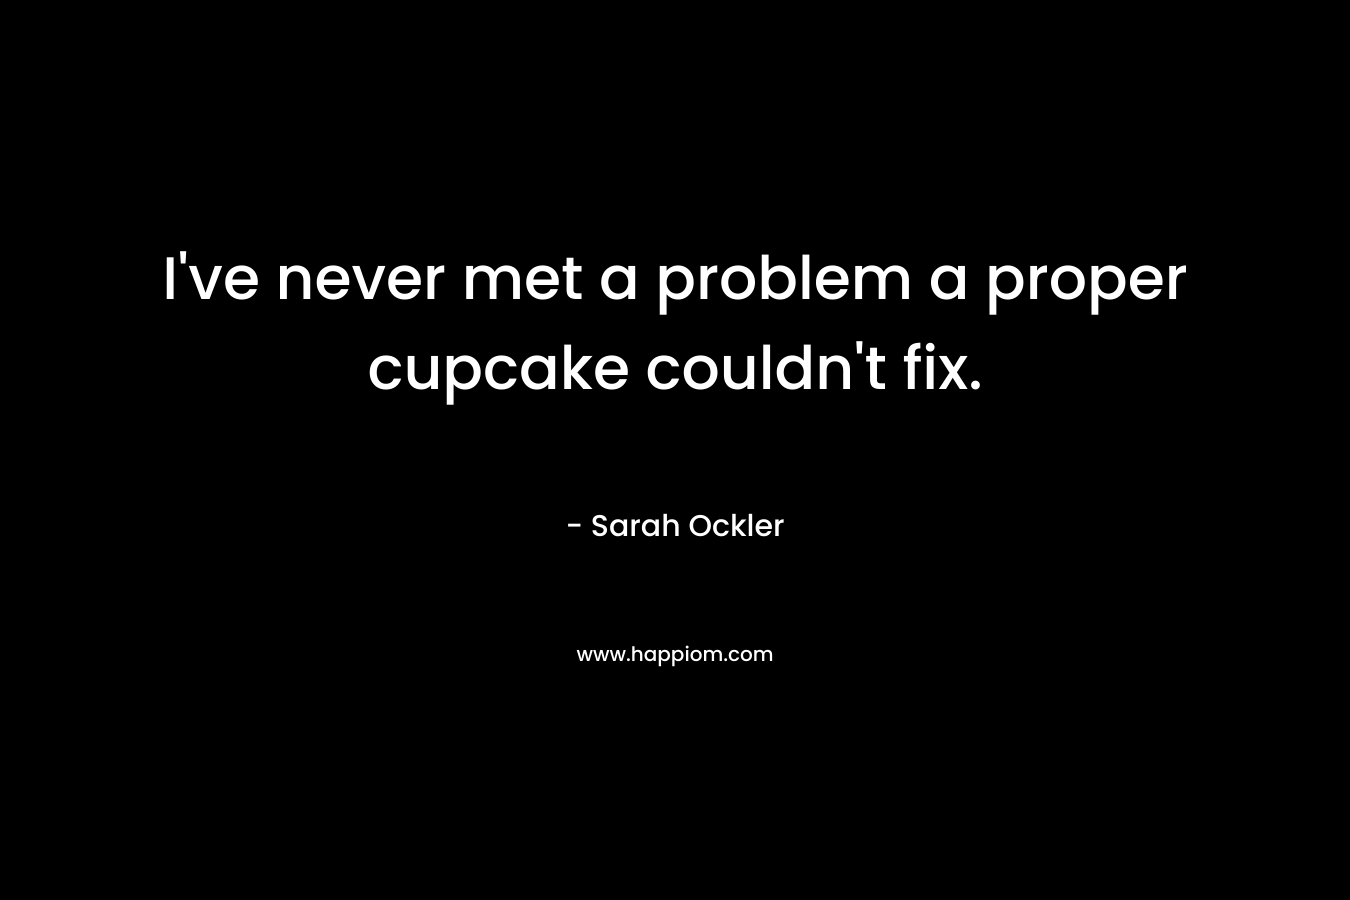 I’ve never met a problem a proper cupcake couldn’t fix. – Sarah Ockler